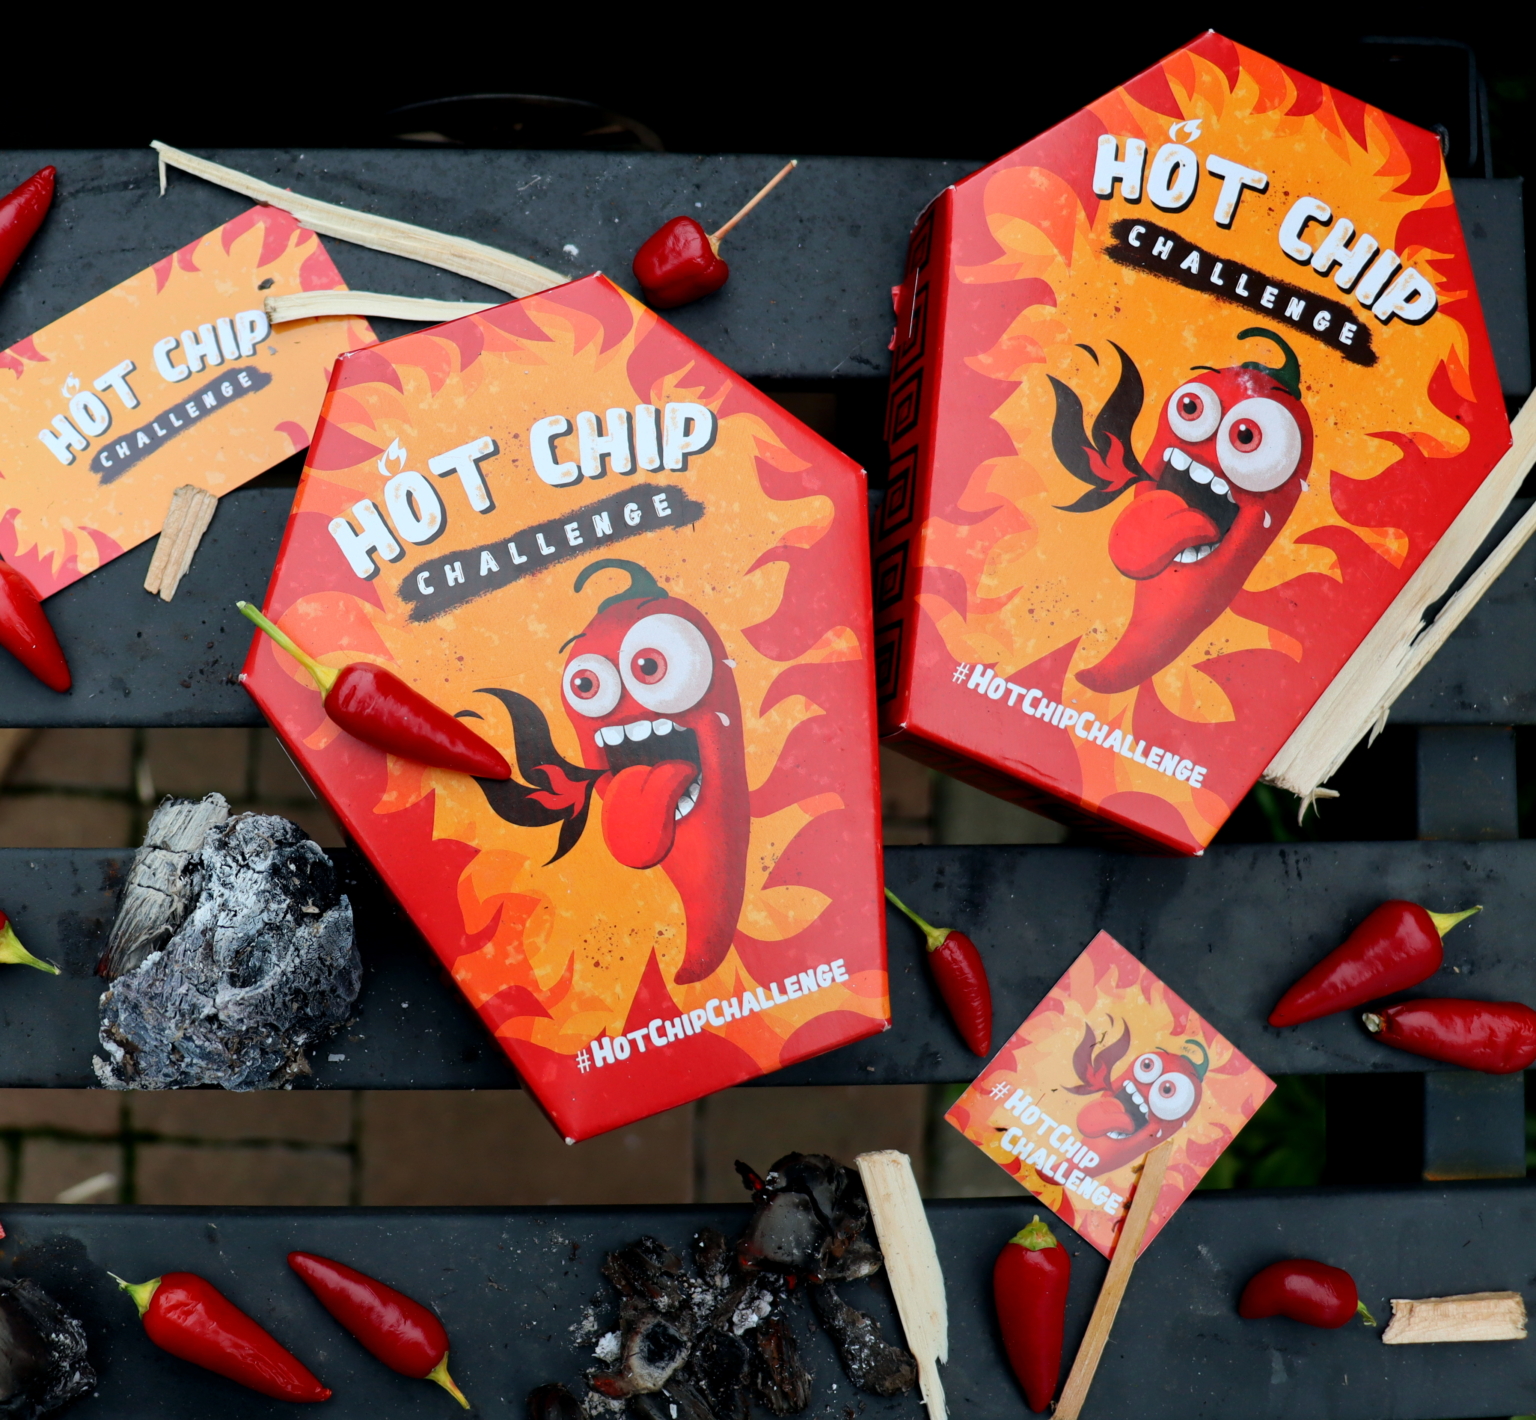 Hot chip challenge Sníme nejpálivější chips na světě! Food Trip Duo